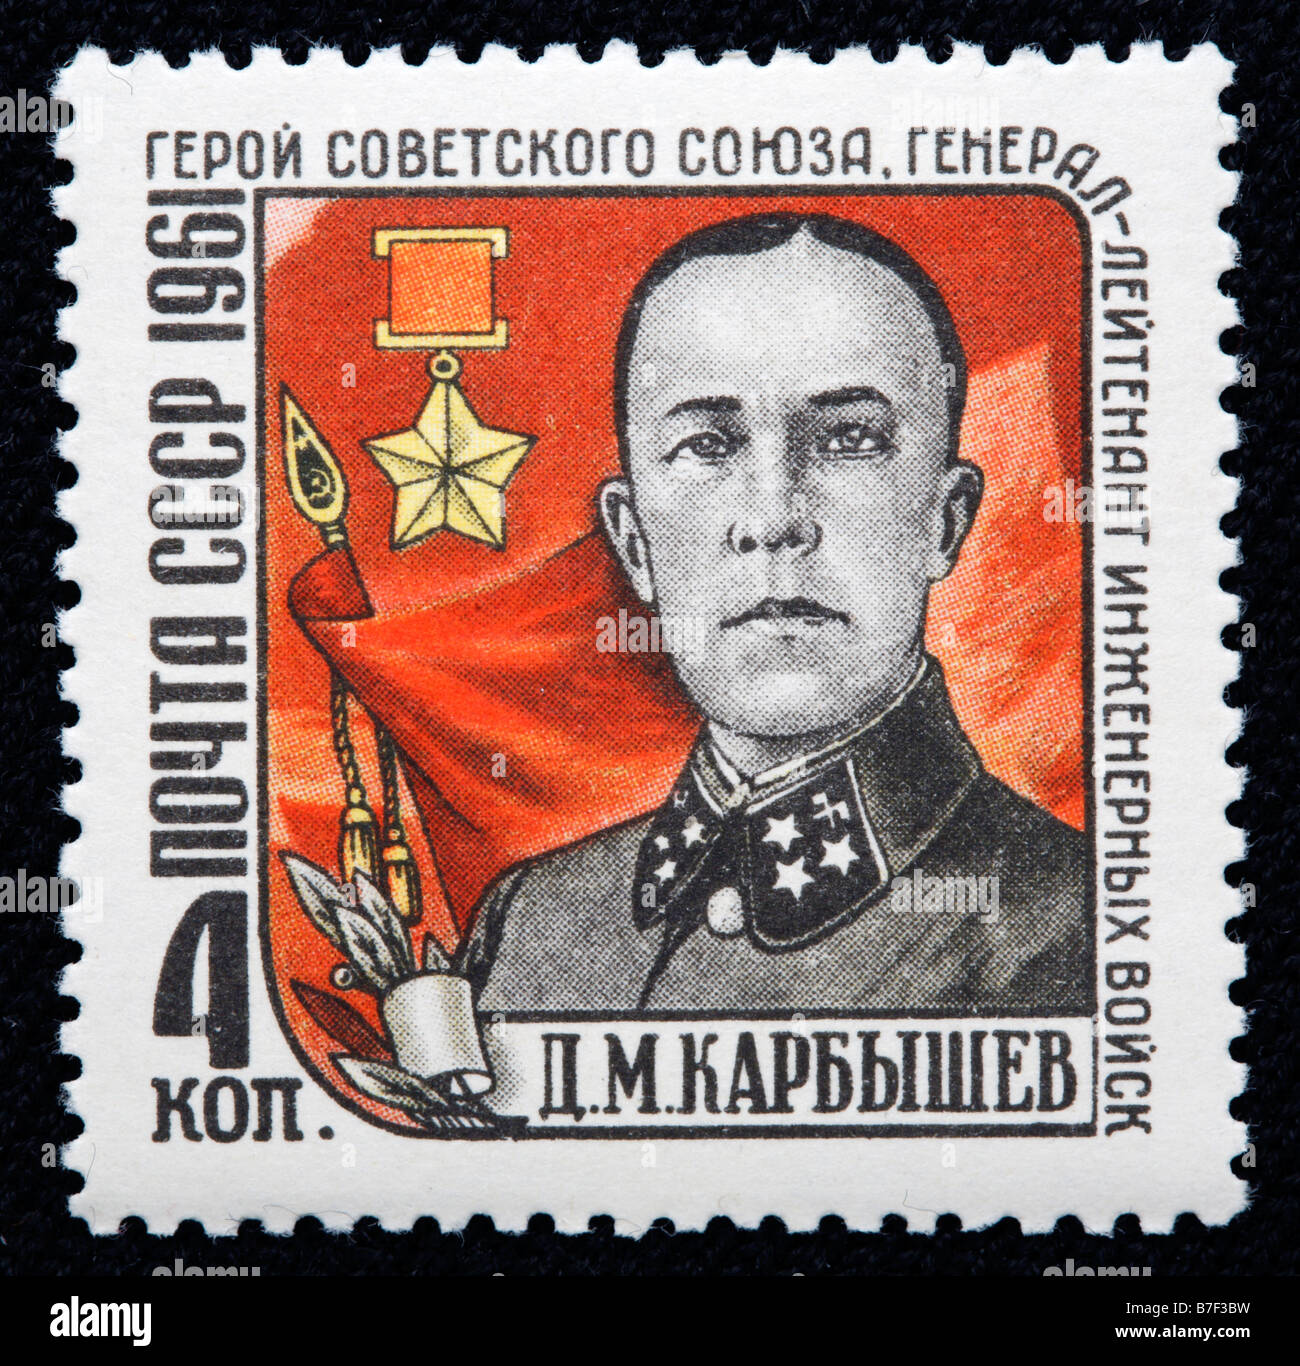 Dmitry Karbyshev (1880-1945), général de l'Armée Rouge, héros de l'Union soviétique, timbre-poste, URSS, 1961 Banque D'Images